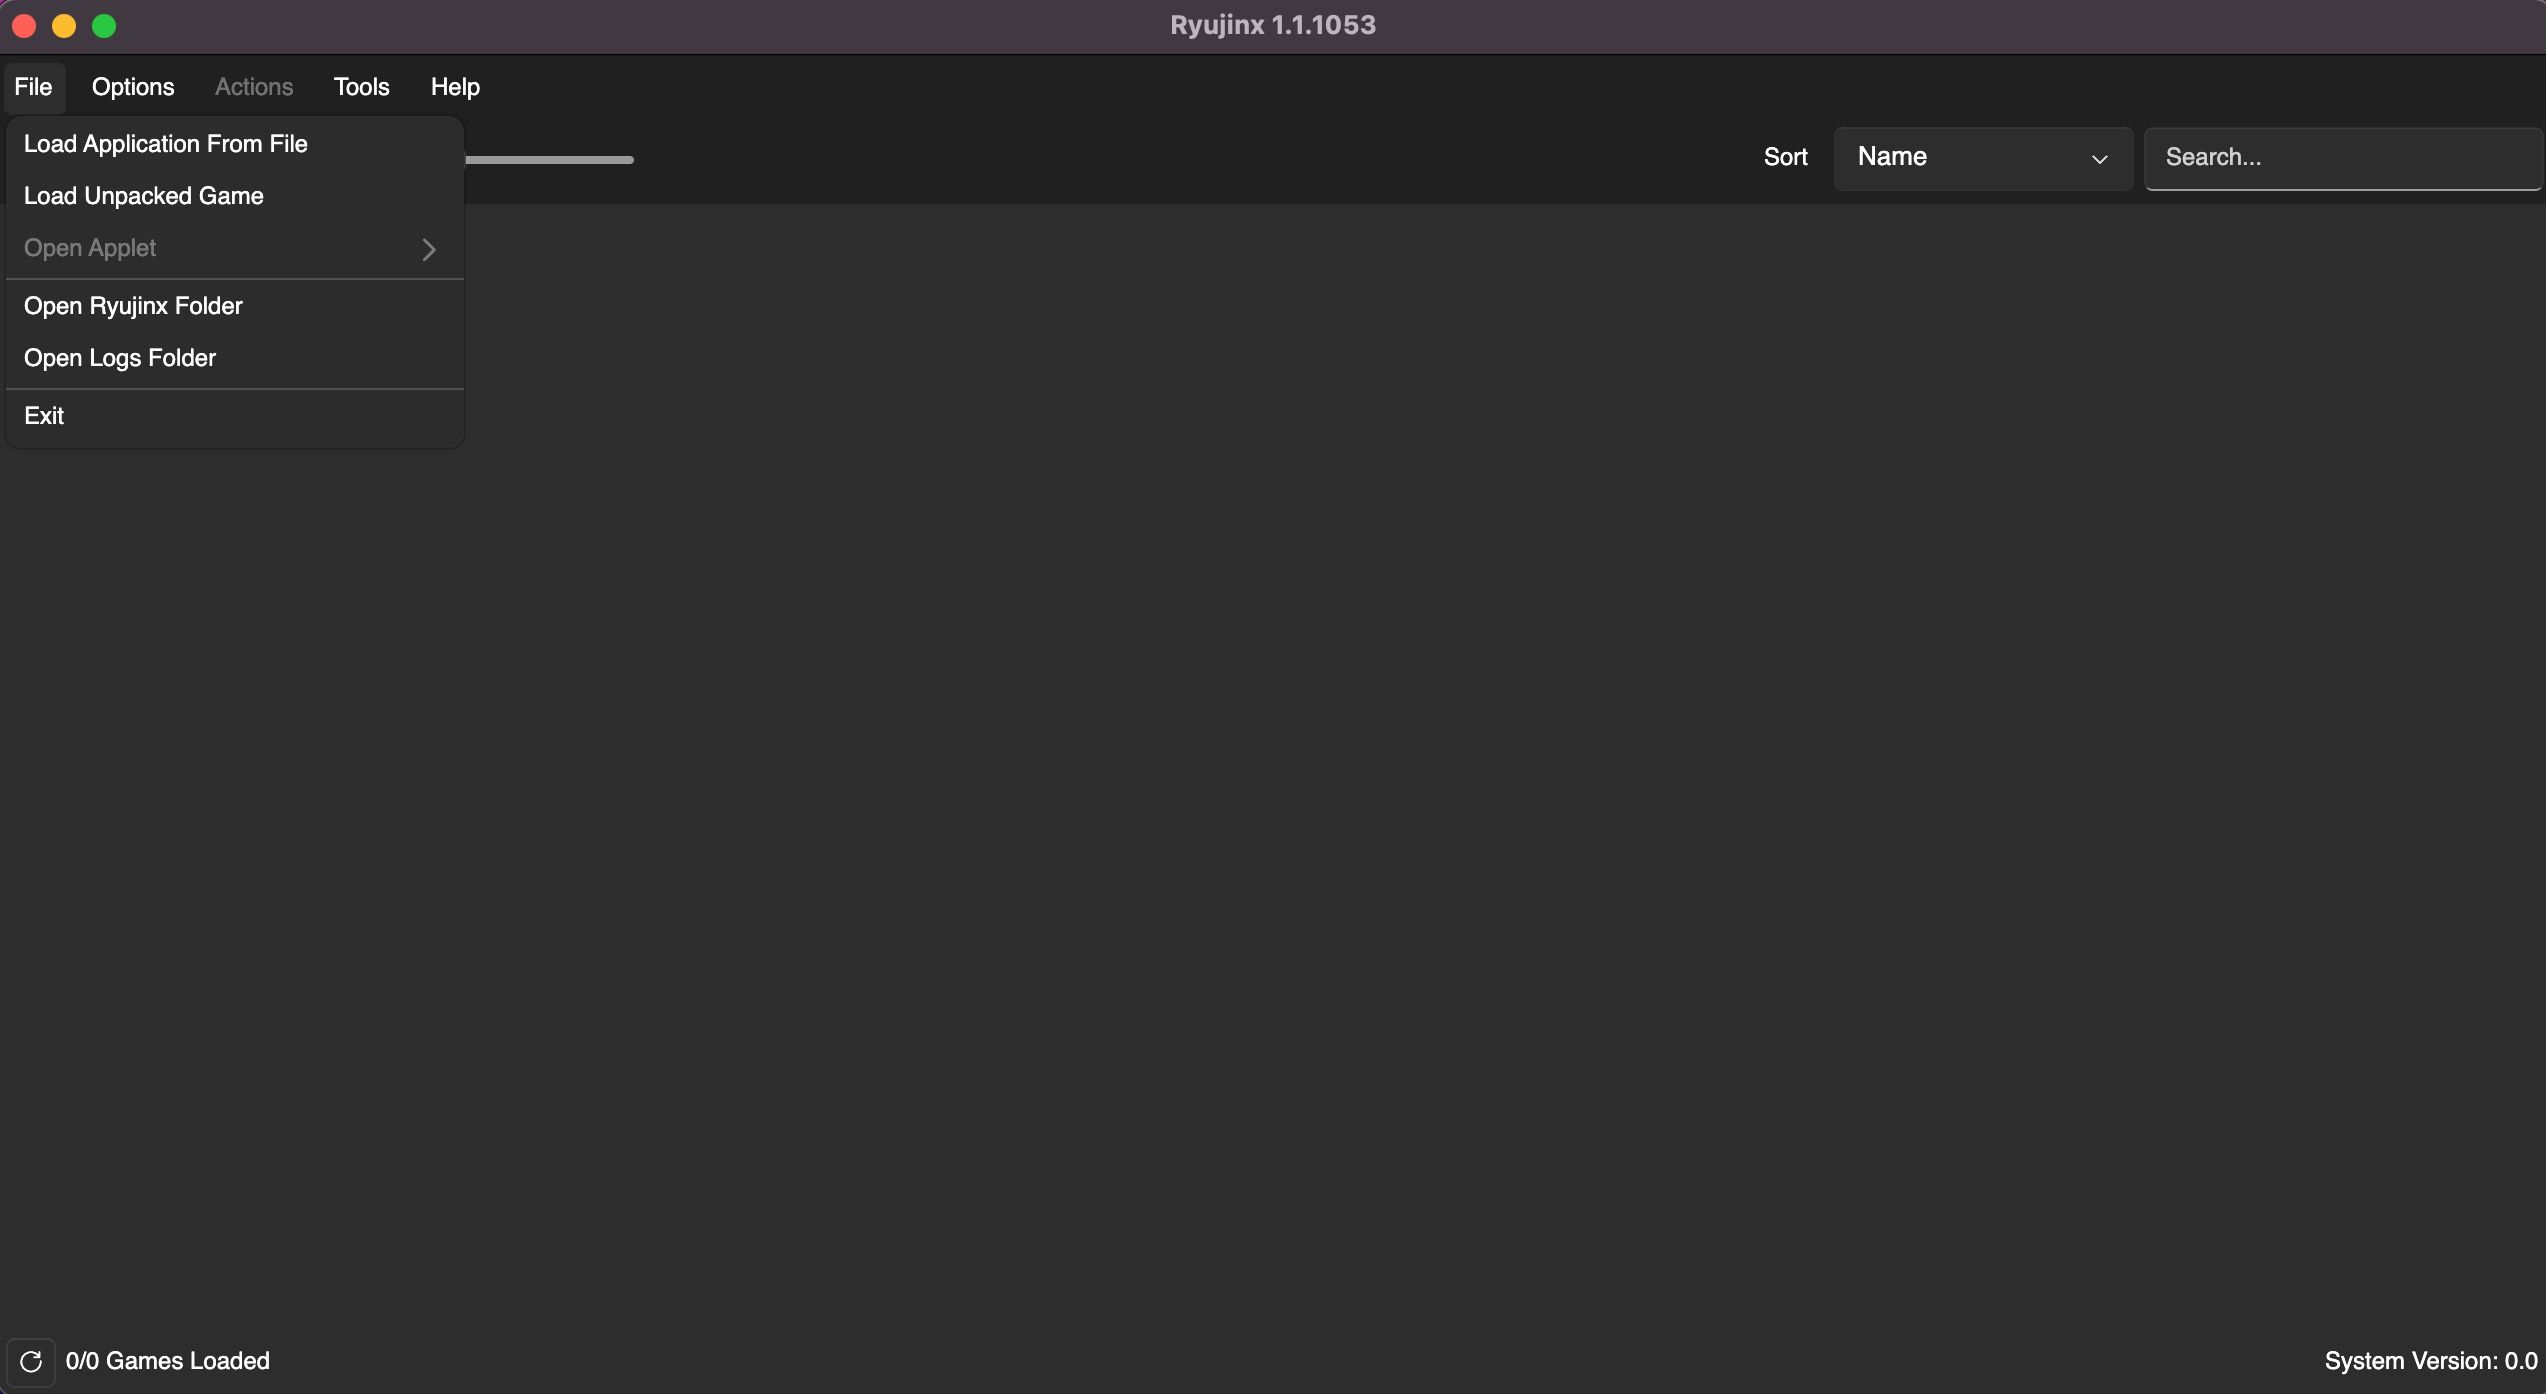 La page d'accueil de Ryujinx macOS est ouverte, avec des options pour configurer Ryujinx